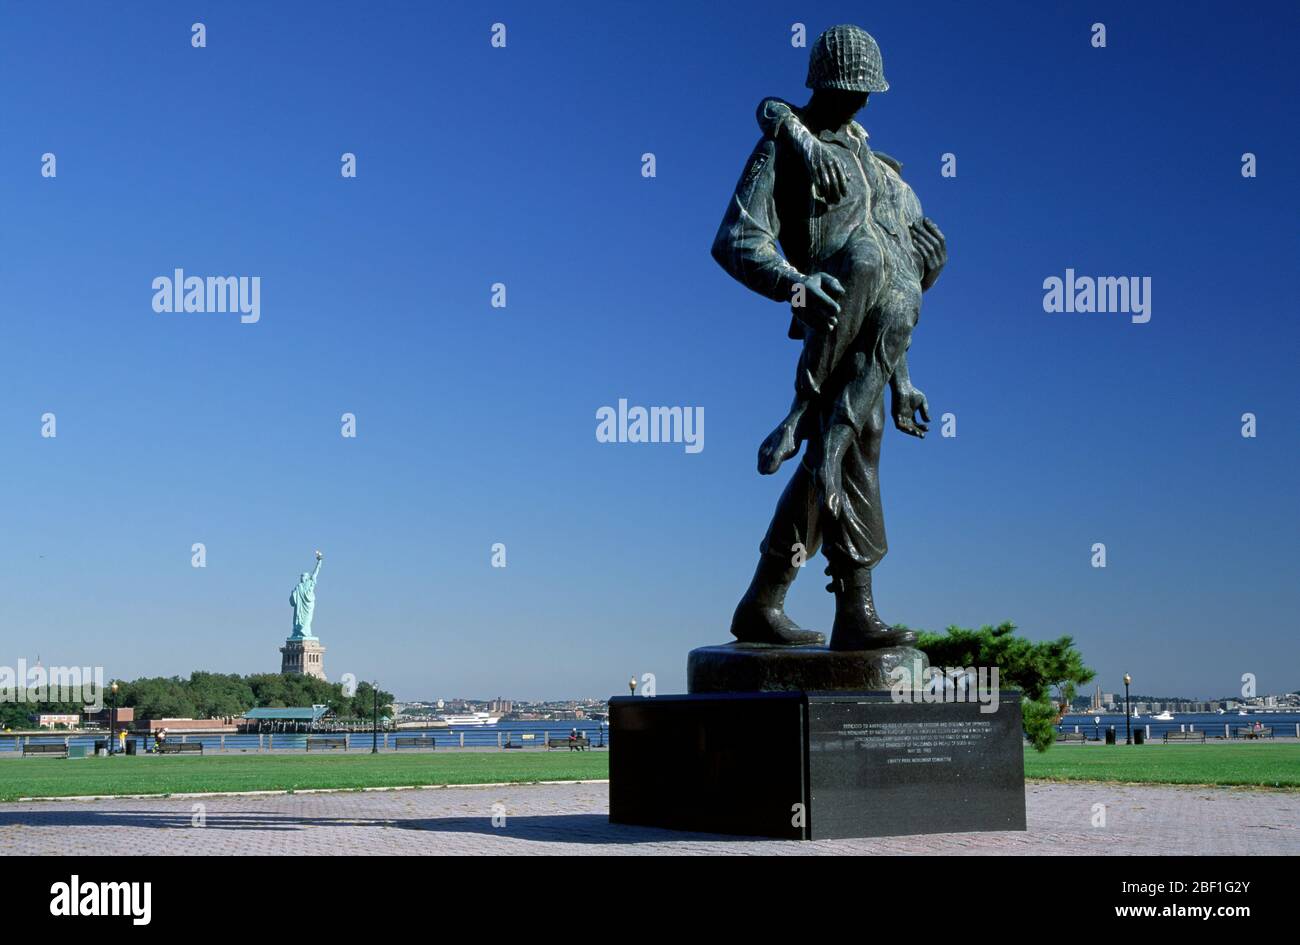 Monumento de la Liberación con Estatua de la Liberty State Park, Nueva Jersey Fotografía de stock - Alamy